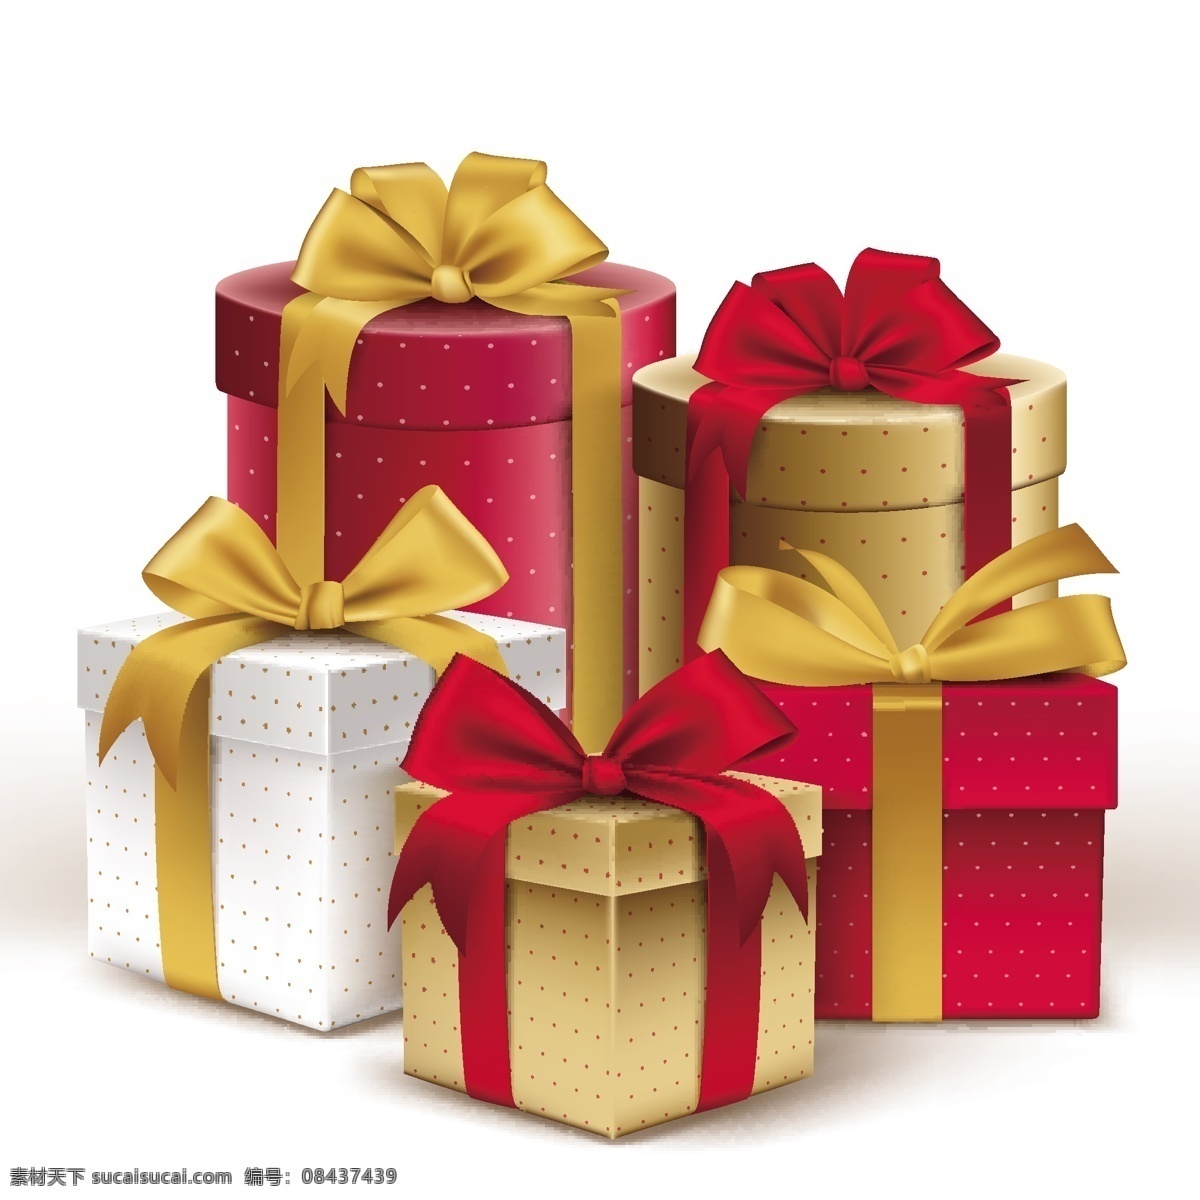 礼品盒 礼品盒矢量图 粉红色礼品盒 彩带 活动彩带 活动礼品 礼盒 杂七杂八 包装设计